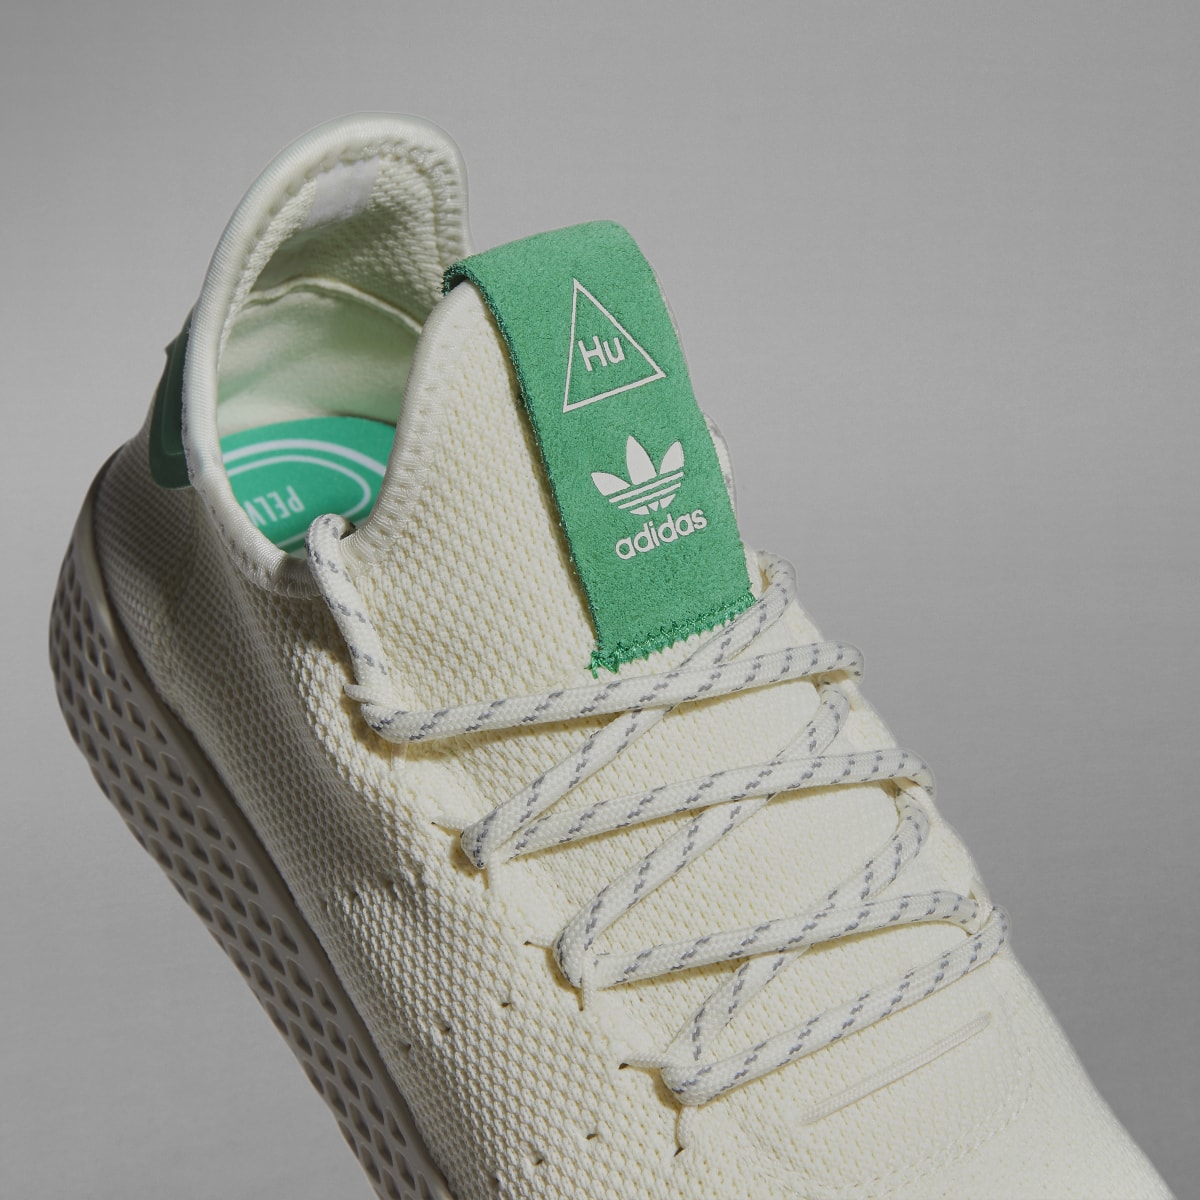 Adidas Tennis Hu Shoes. 9